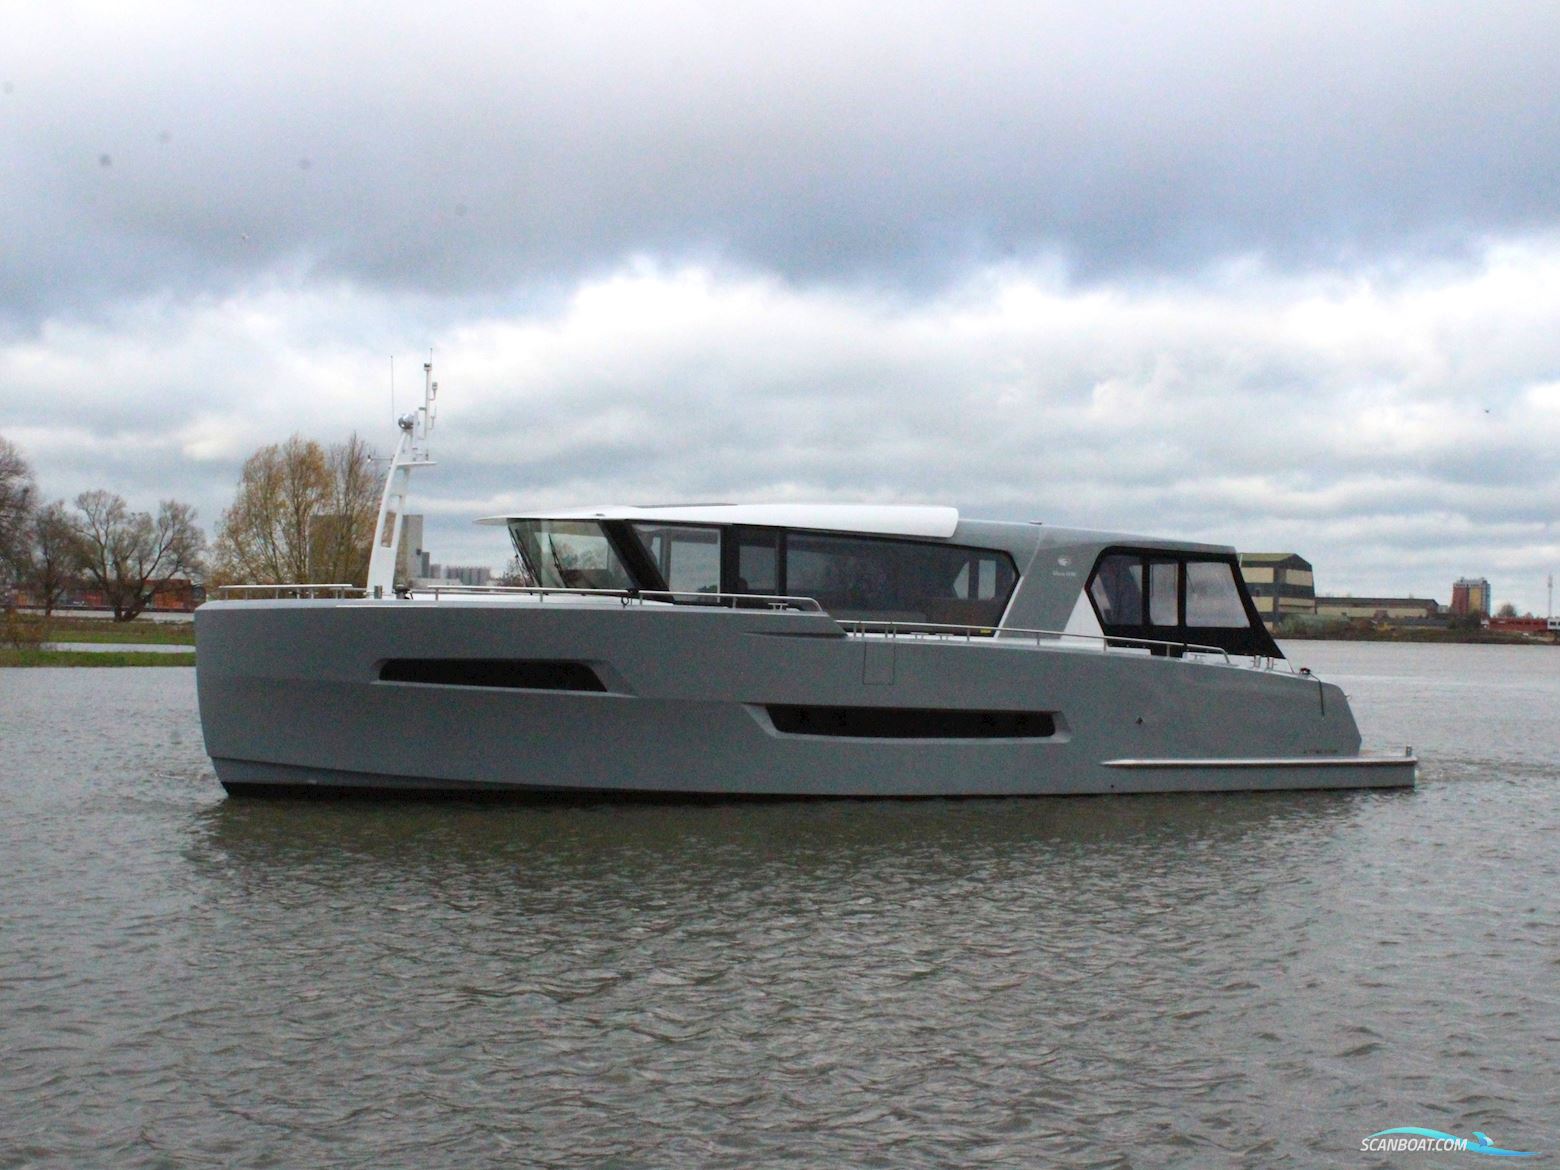 Altena 54 Next Generation Motorbåt 2022, med John Deere motor, Holland